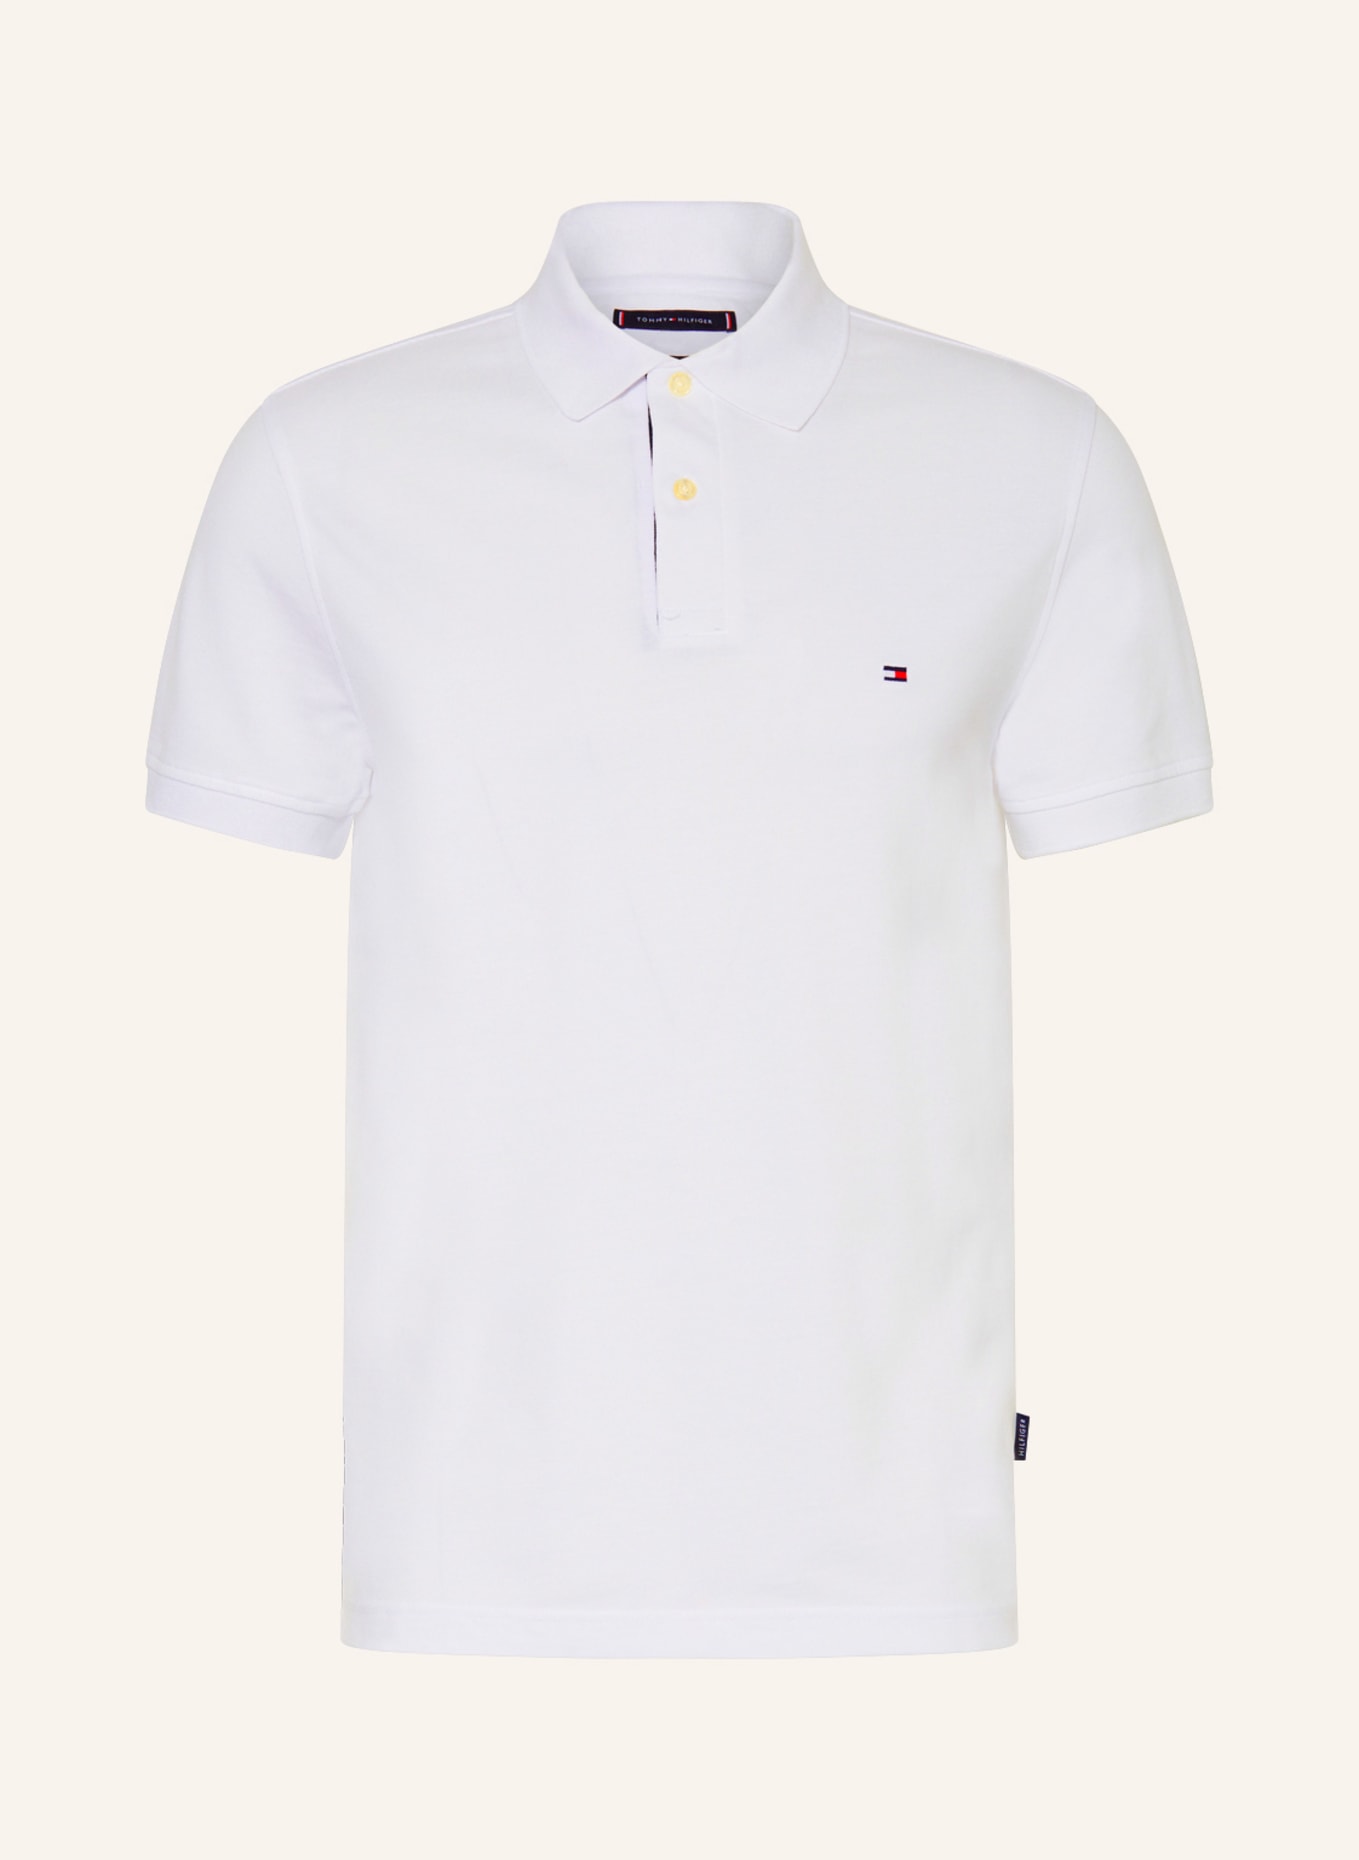 TOMMY HILFIGER Piqué-Poloshirt Regular Fit, Farbe: WEISS (Bild 1)